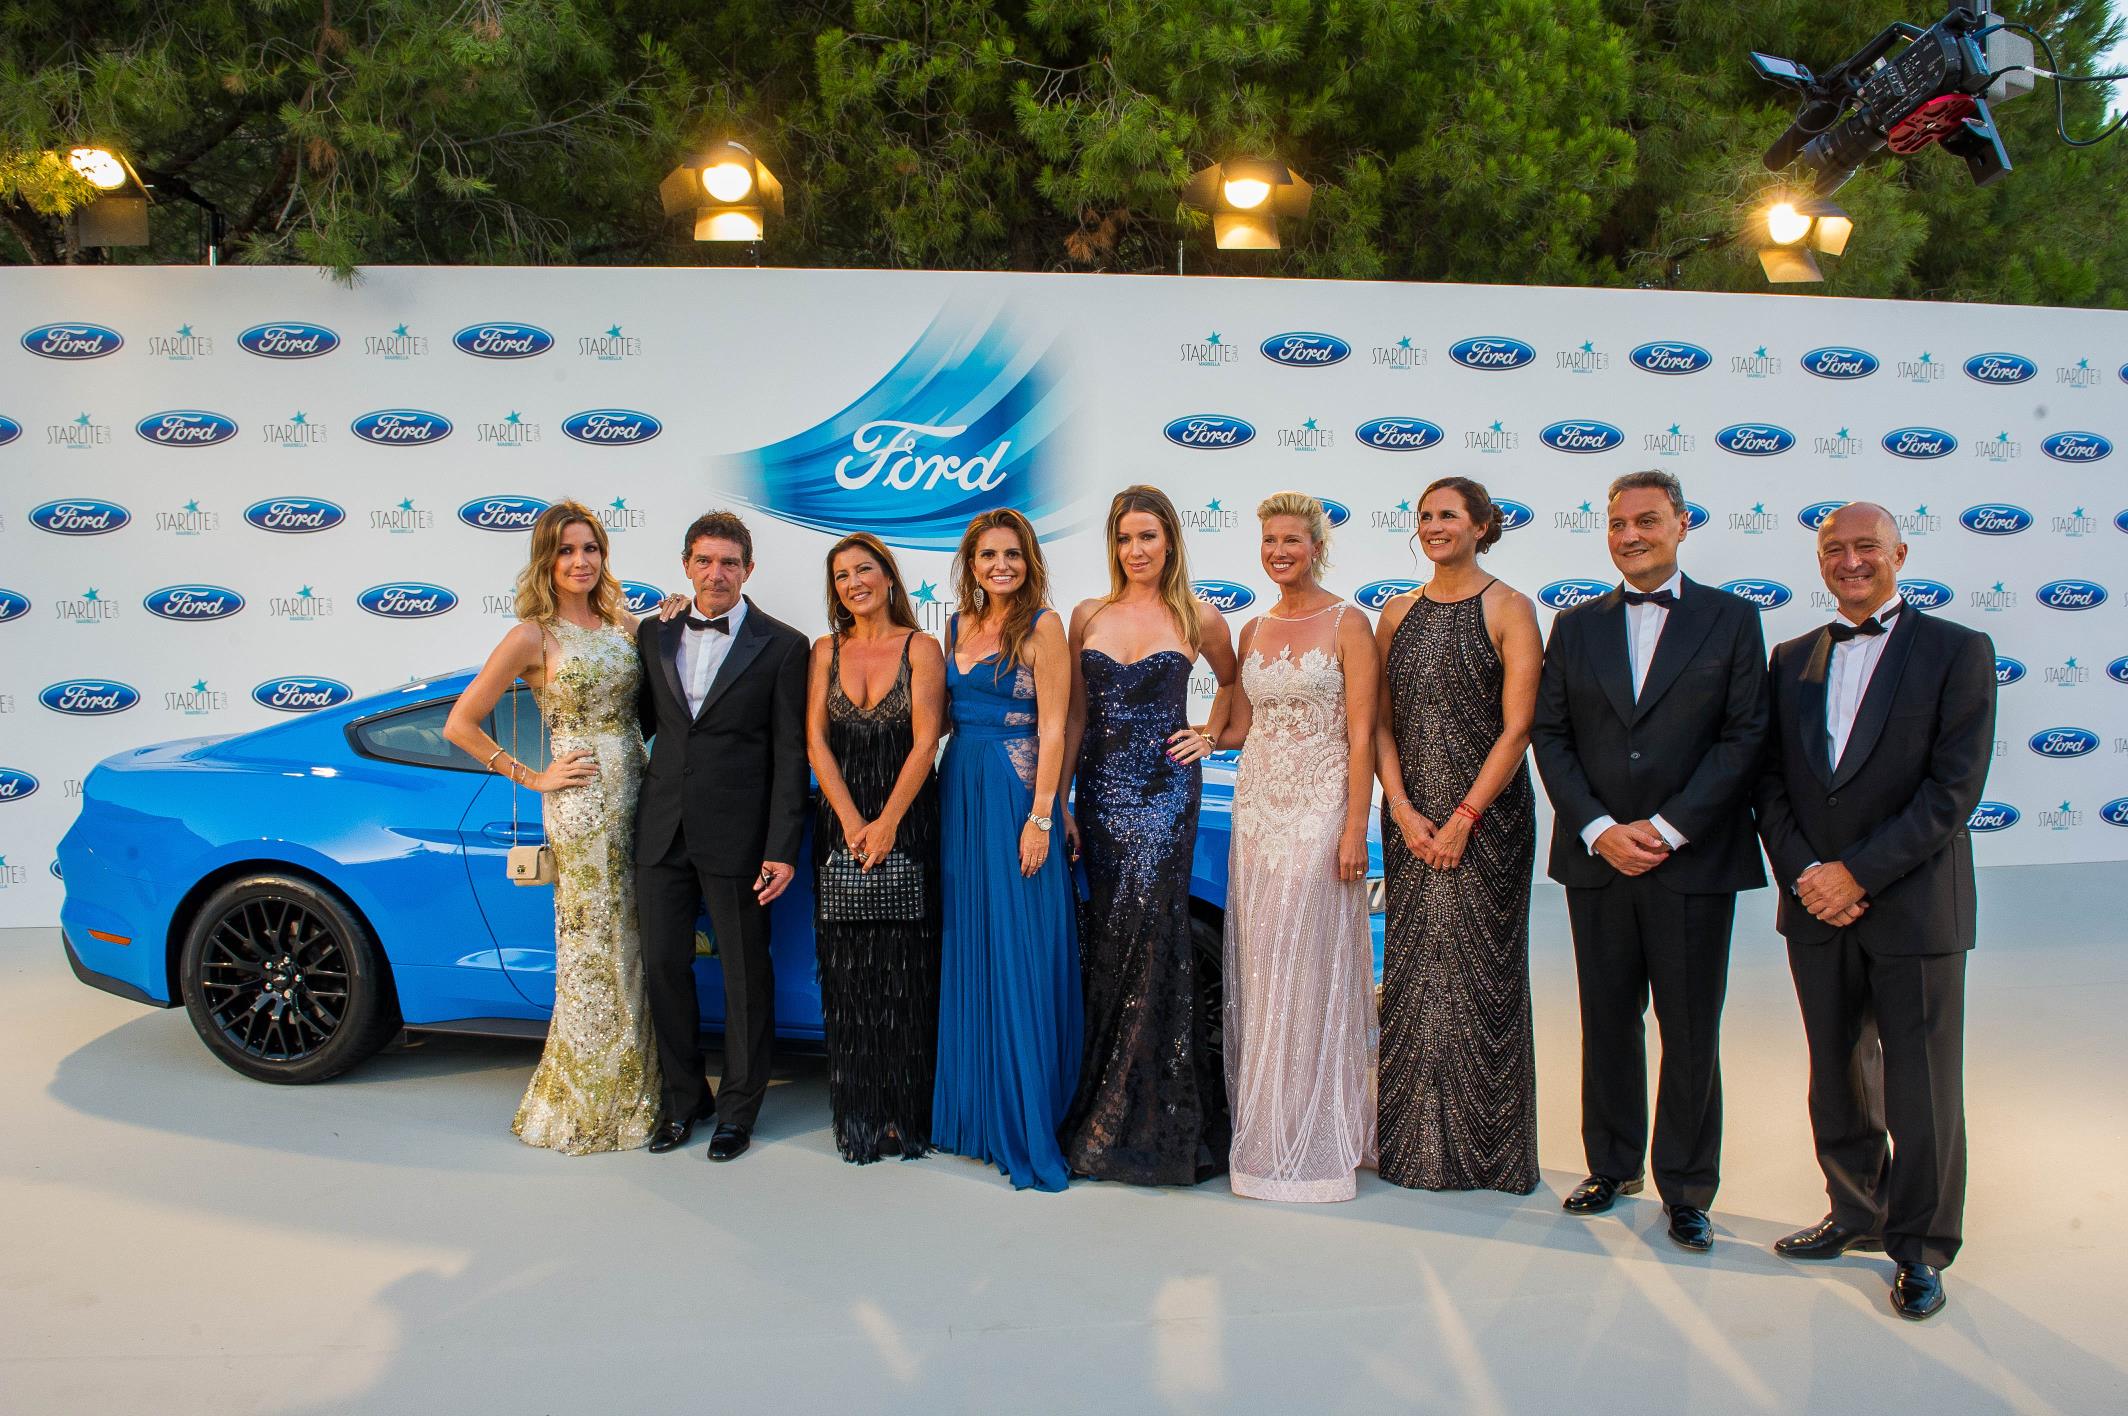 El nuevo Ford Fiesta en el Starlite Marbella 2017